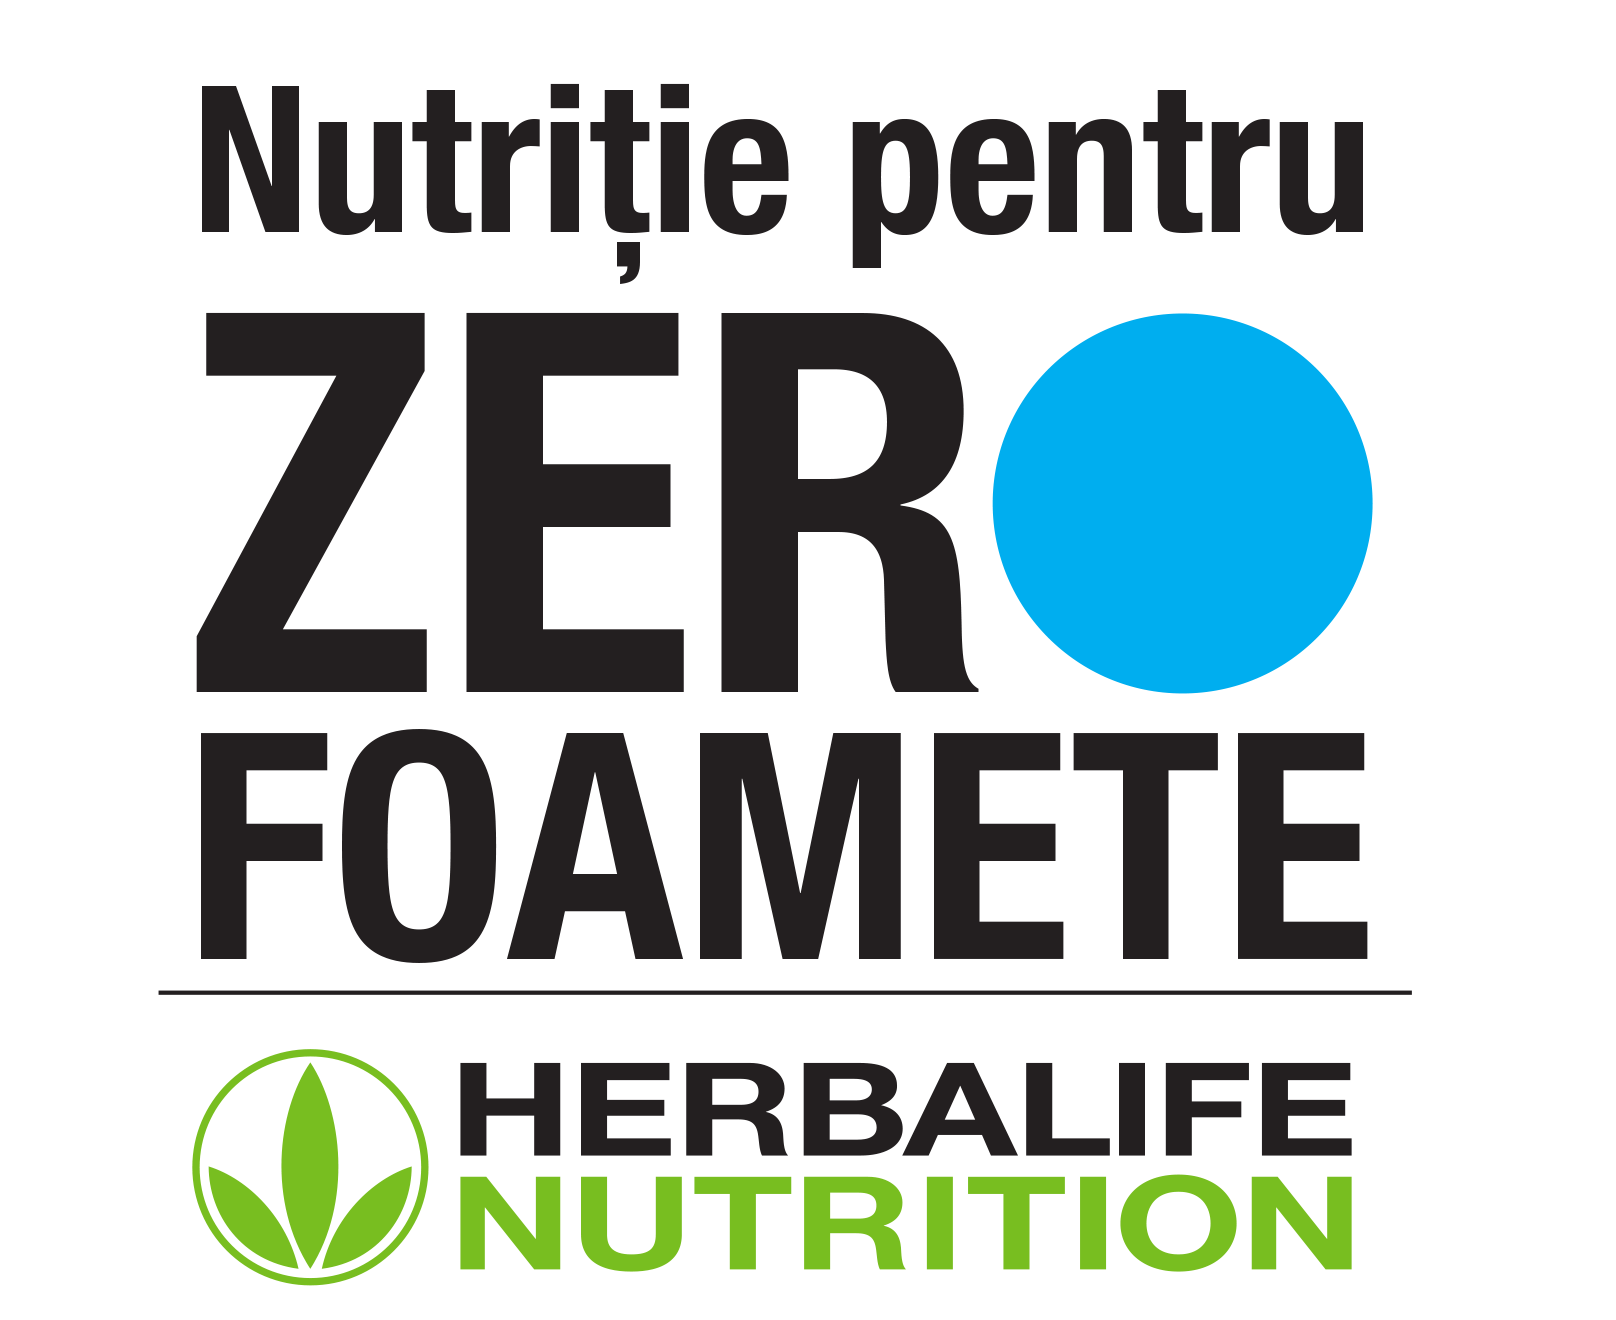 Herbalife Nutrition și Fundația Herbalife Nutrition se alătură The Global FoodBanking Network în lupta împotriva insecurității alimentare